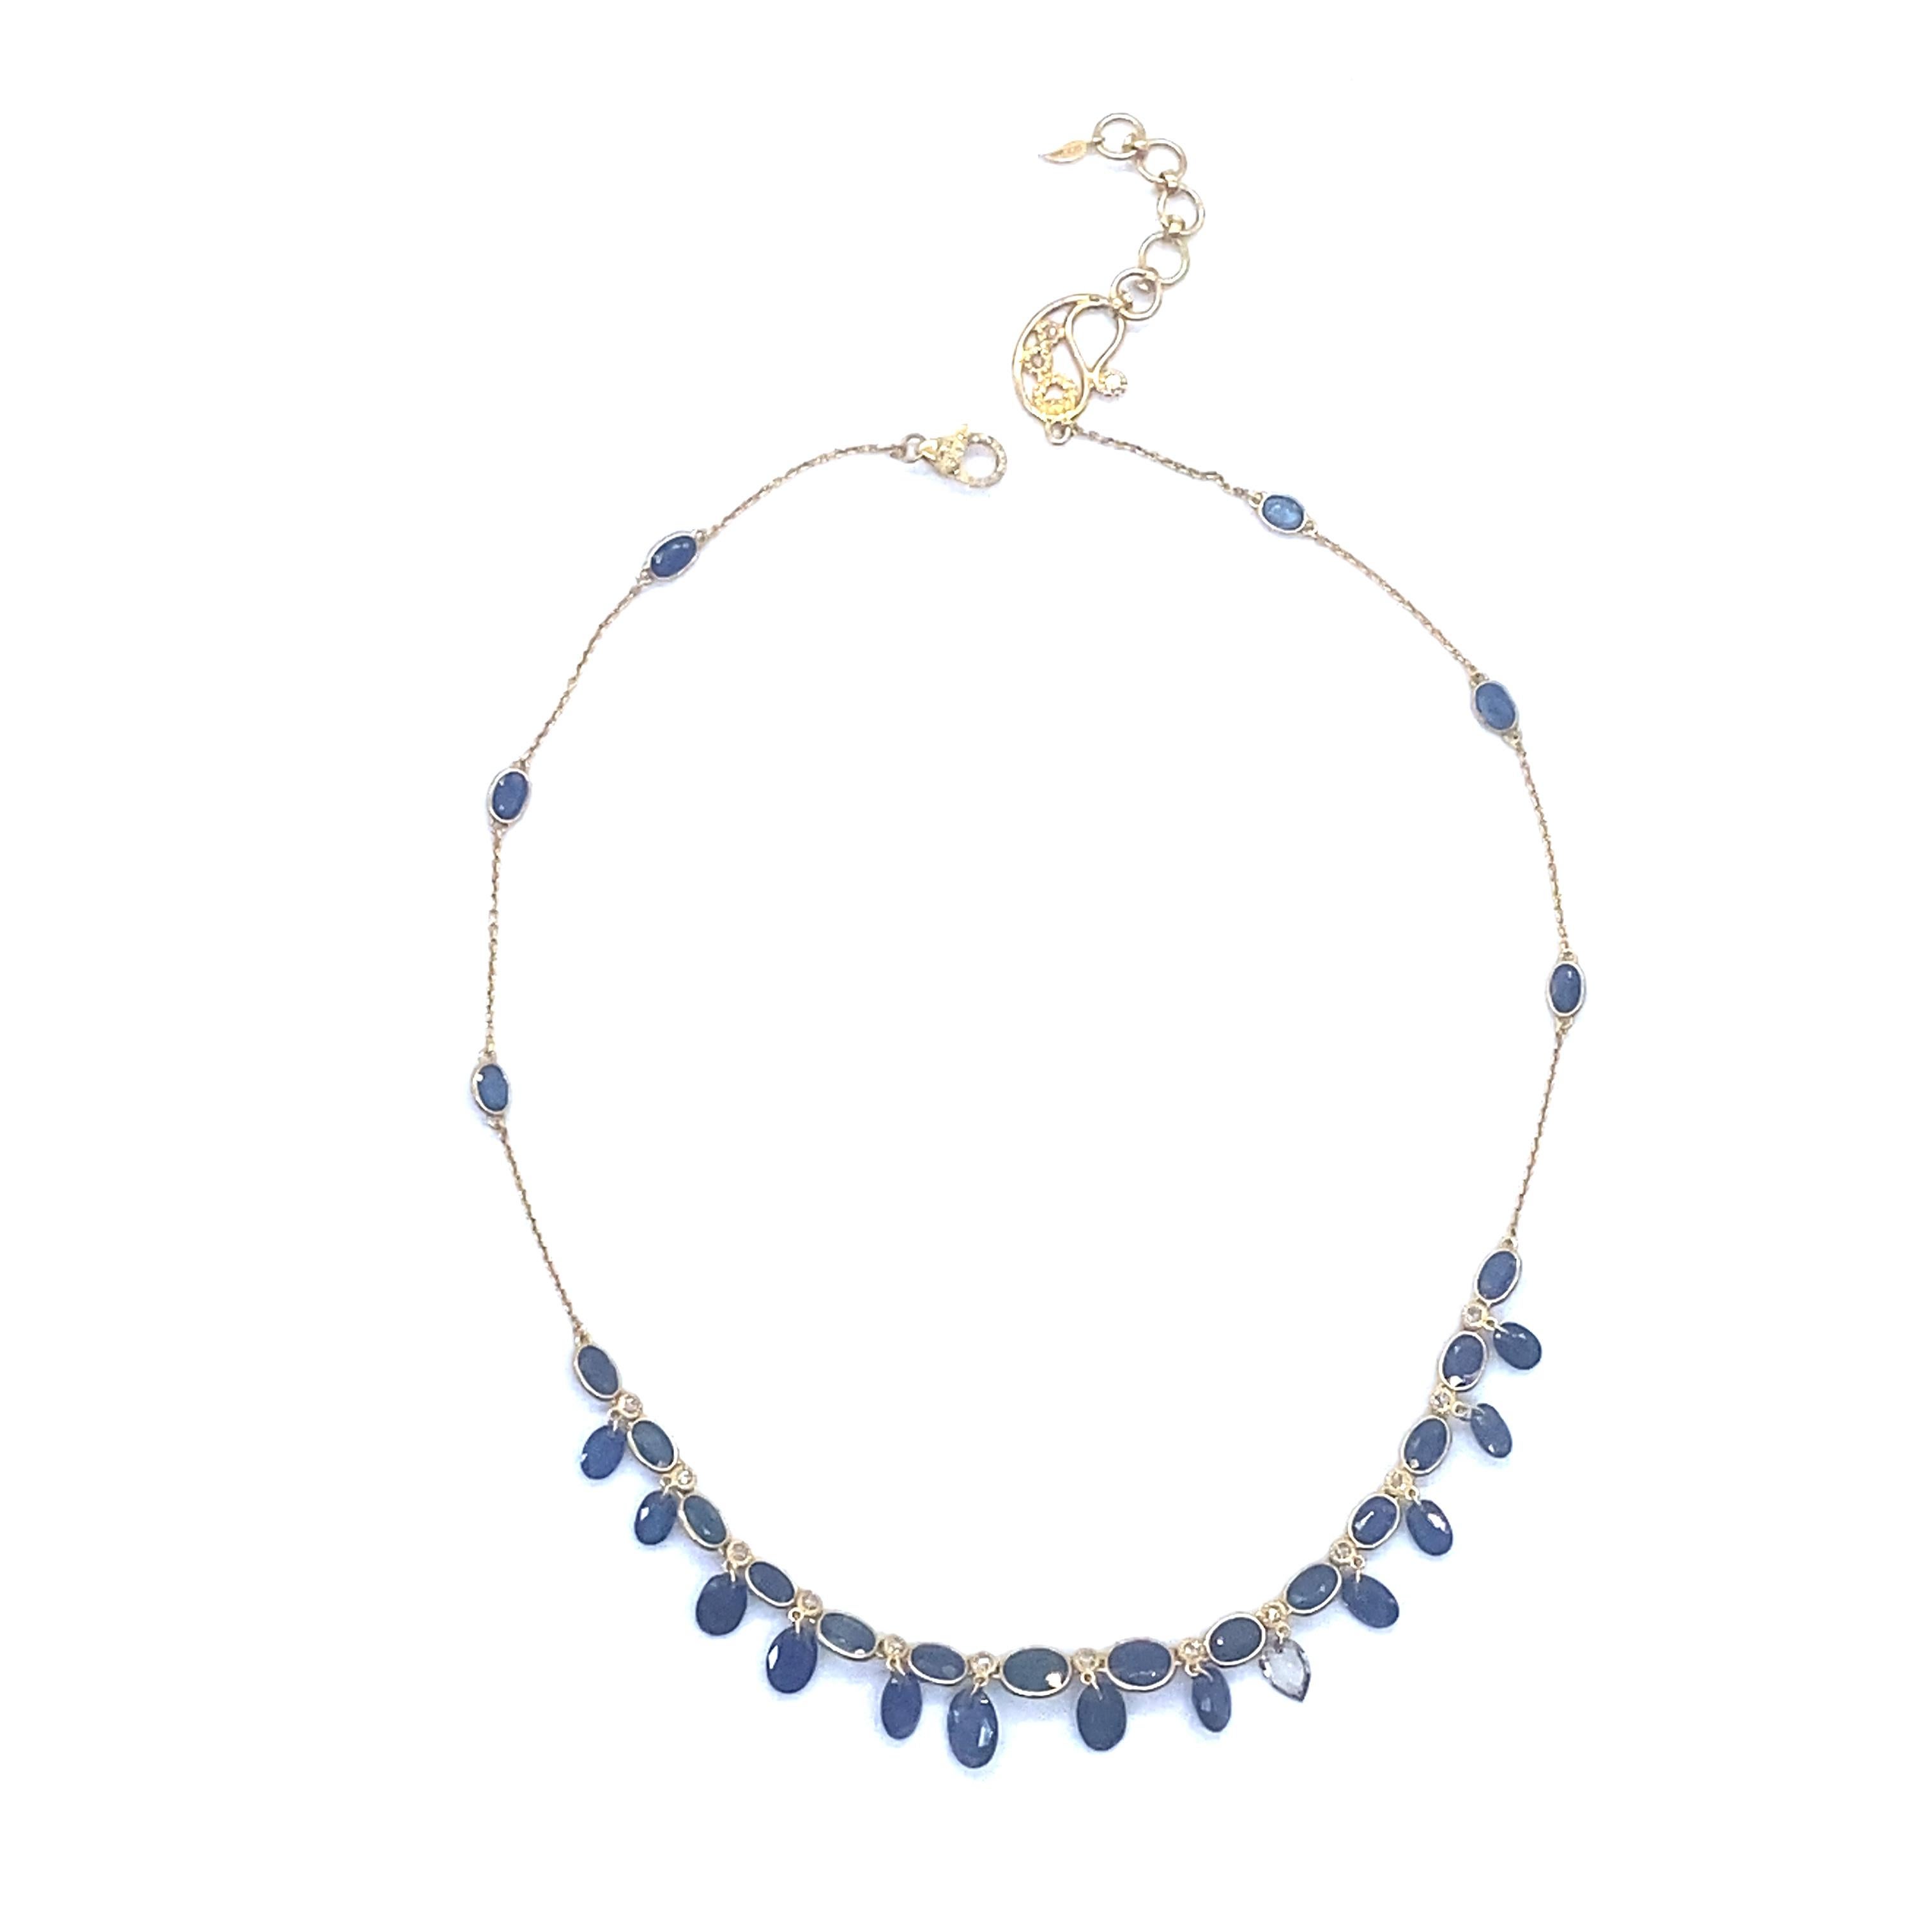 Einzigartige Affinity-Halskette aus 20 Karat Gelbgold mit 19,63 Karat blauem Saphir und 1,08 Karat Diamanten im Rosenschliff. Dieses Design weist blaue Saphire und Diamanten in den Zwischenräumen zwischen den einzelnen Tropfen auf.